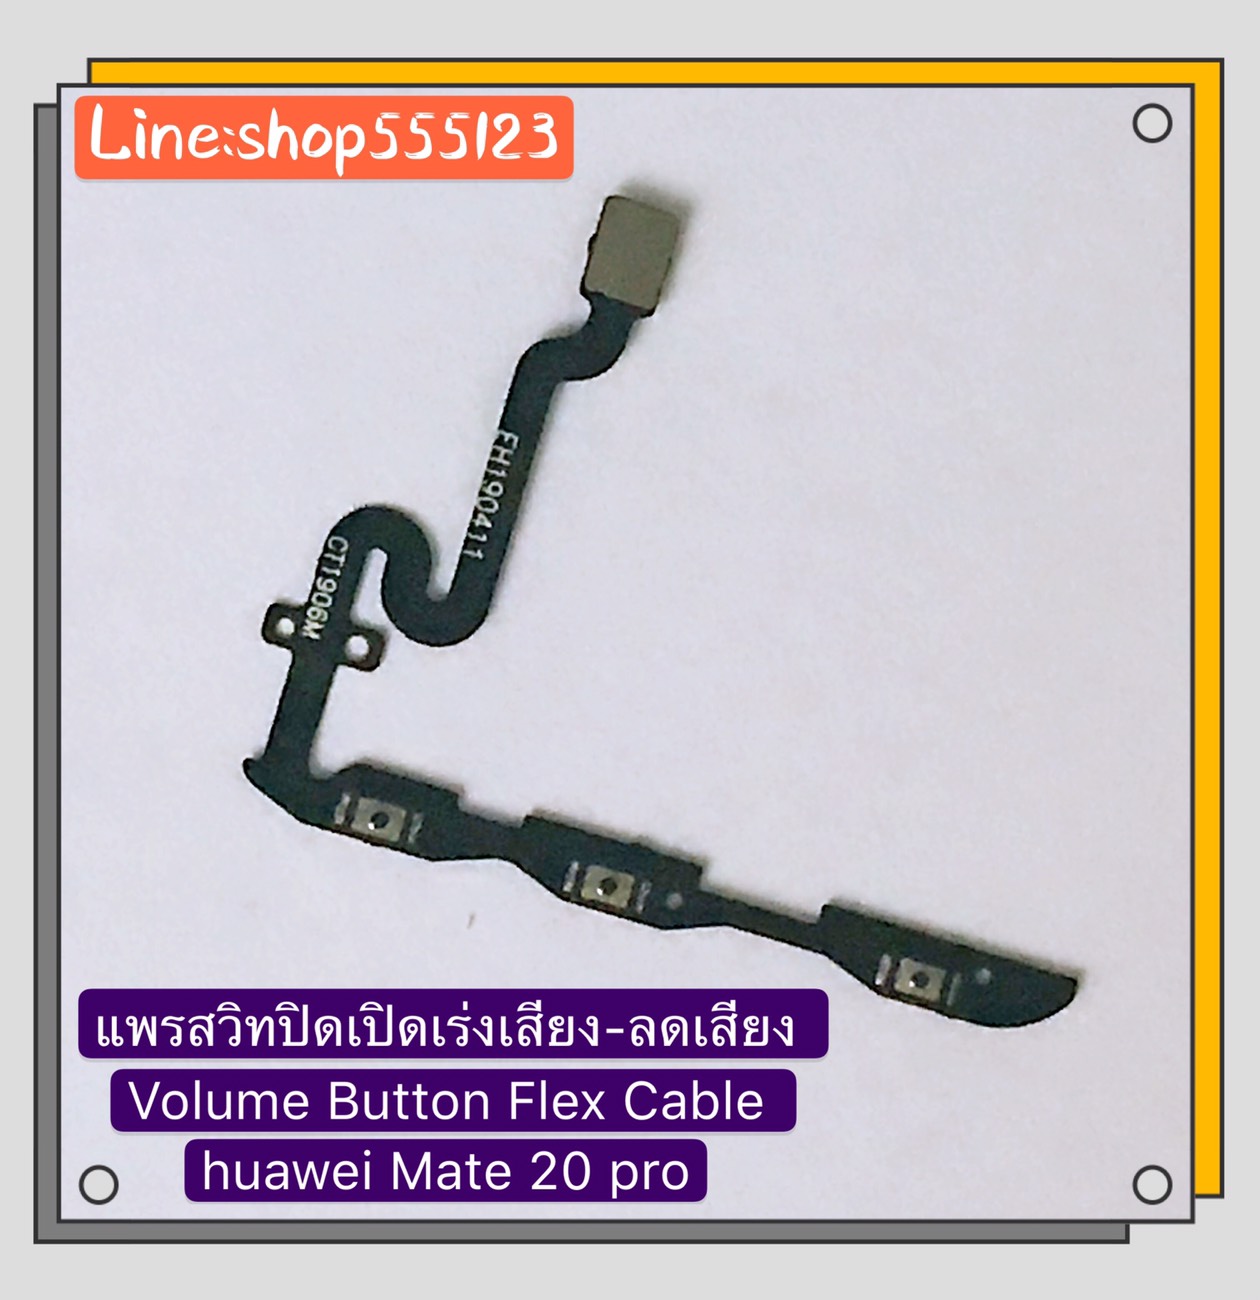 แพรสวิท ปิด-เปิด ( PCB on-off ) Huawei Mate 20 Pro / Mate 20 / Mate 10 Pro สี สีดำ สี สีดำรูปแบบรุ่นที่ีรองรับ แพรสวิท ปิด-เปิด ( PCB on-off ) Huawei Mate 10 Pro